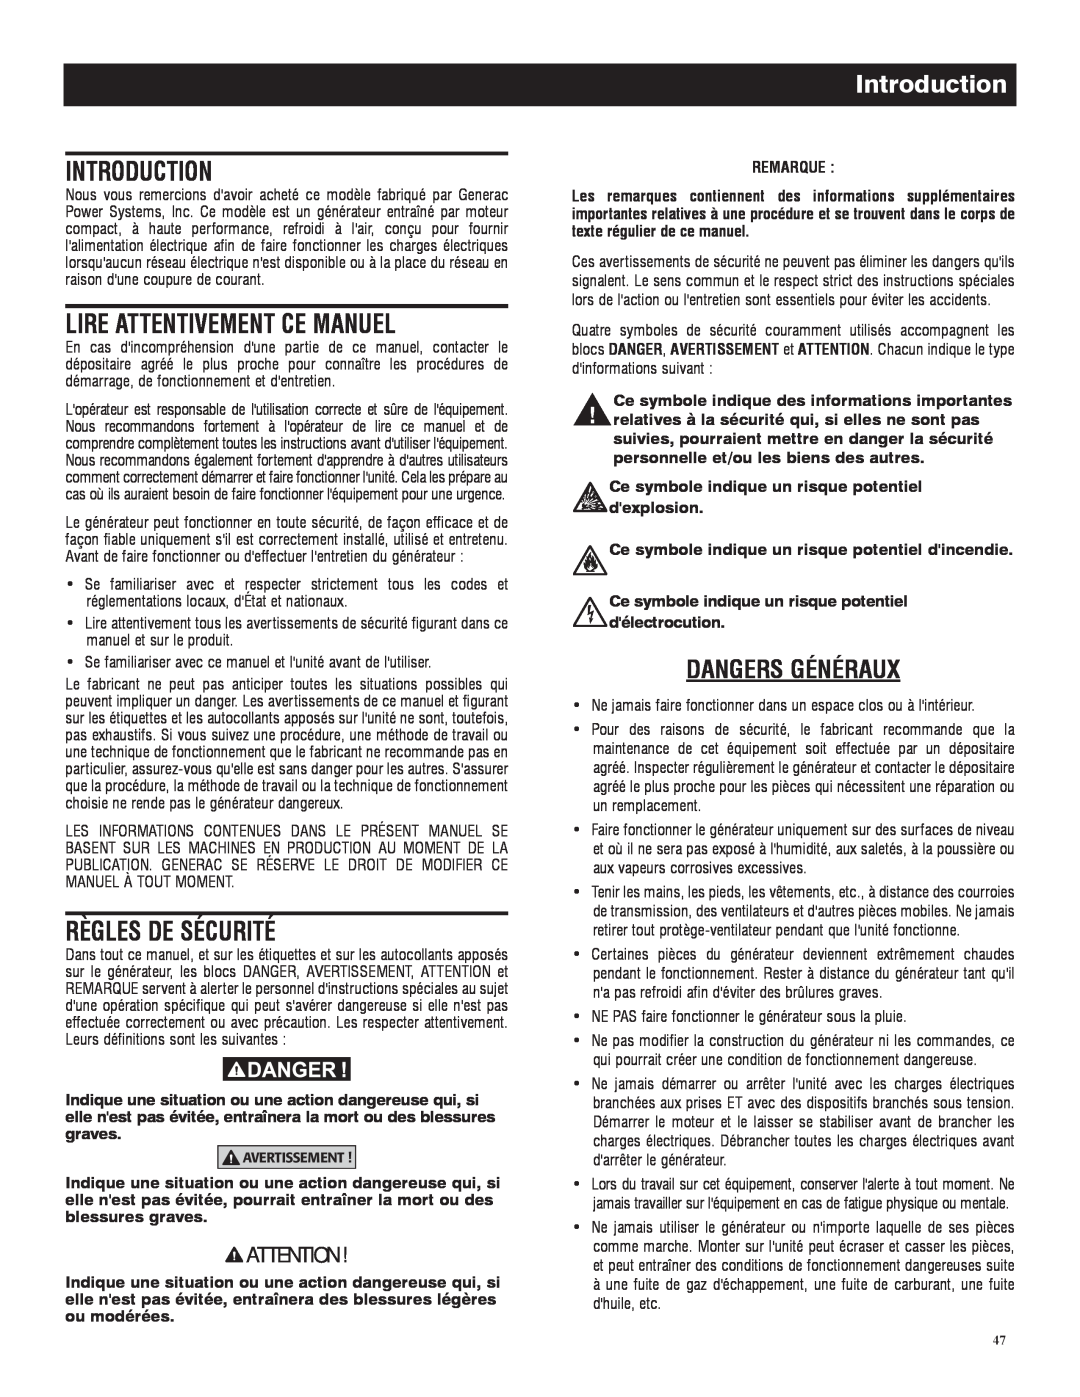 Generac 005735-0, 005734-0 owner manual Lire Attentivement Ce Manuel, Règles De Sécurité, Dangers Généraux, Introduction 